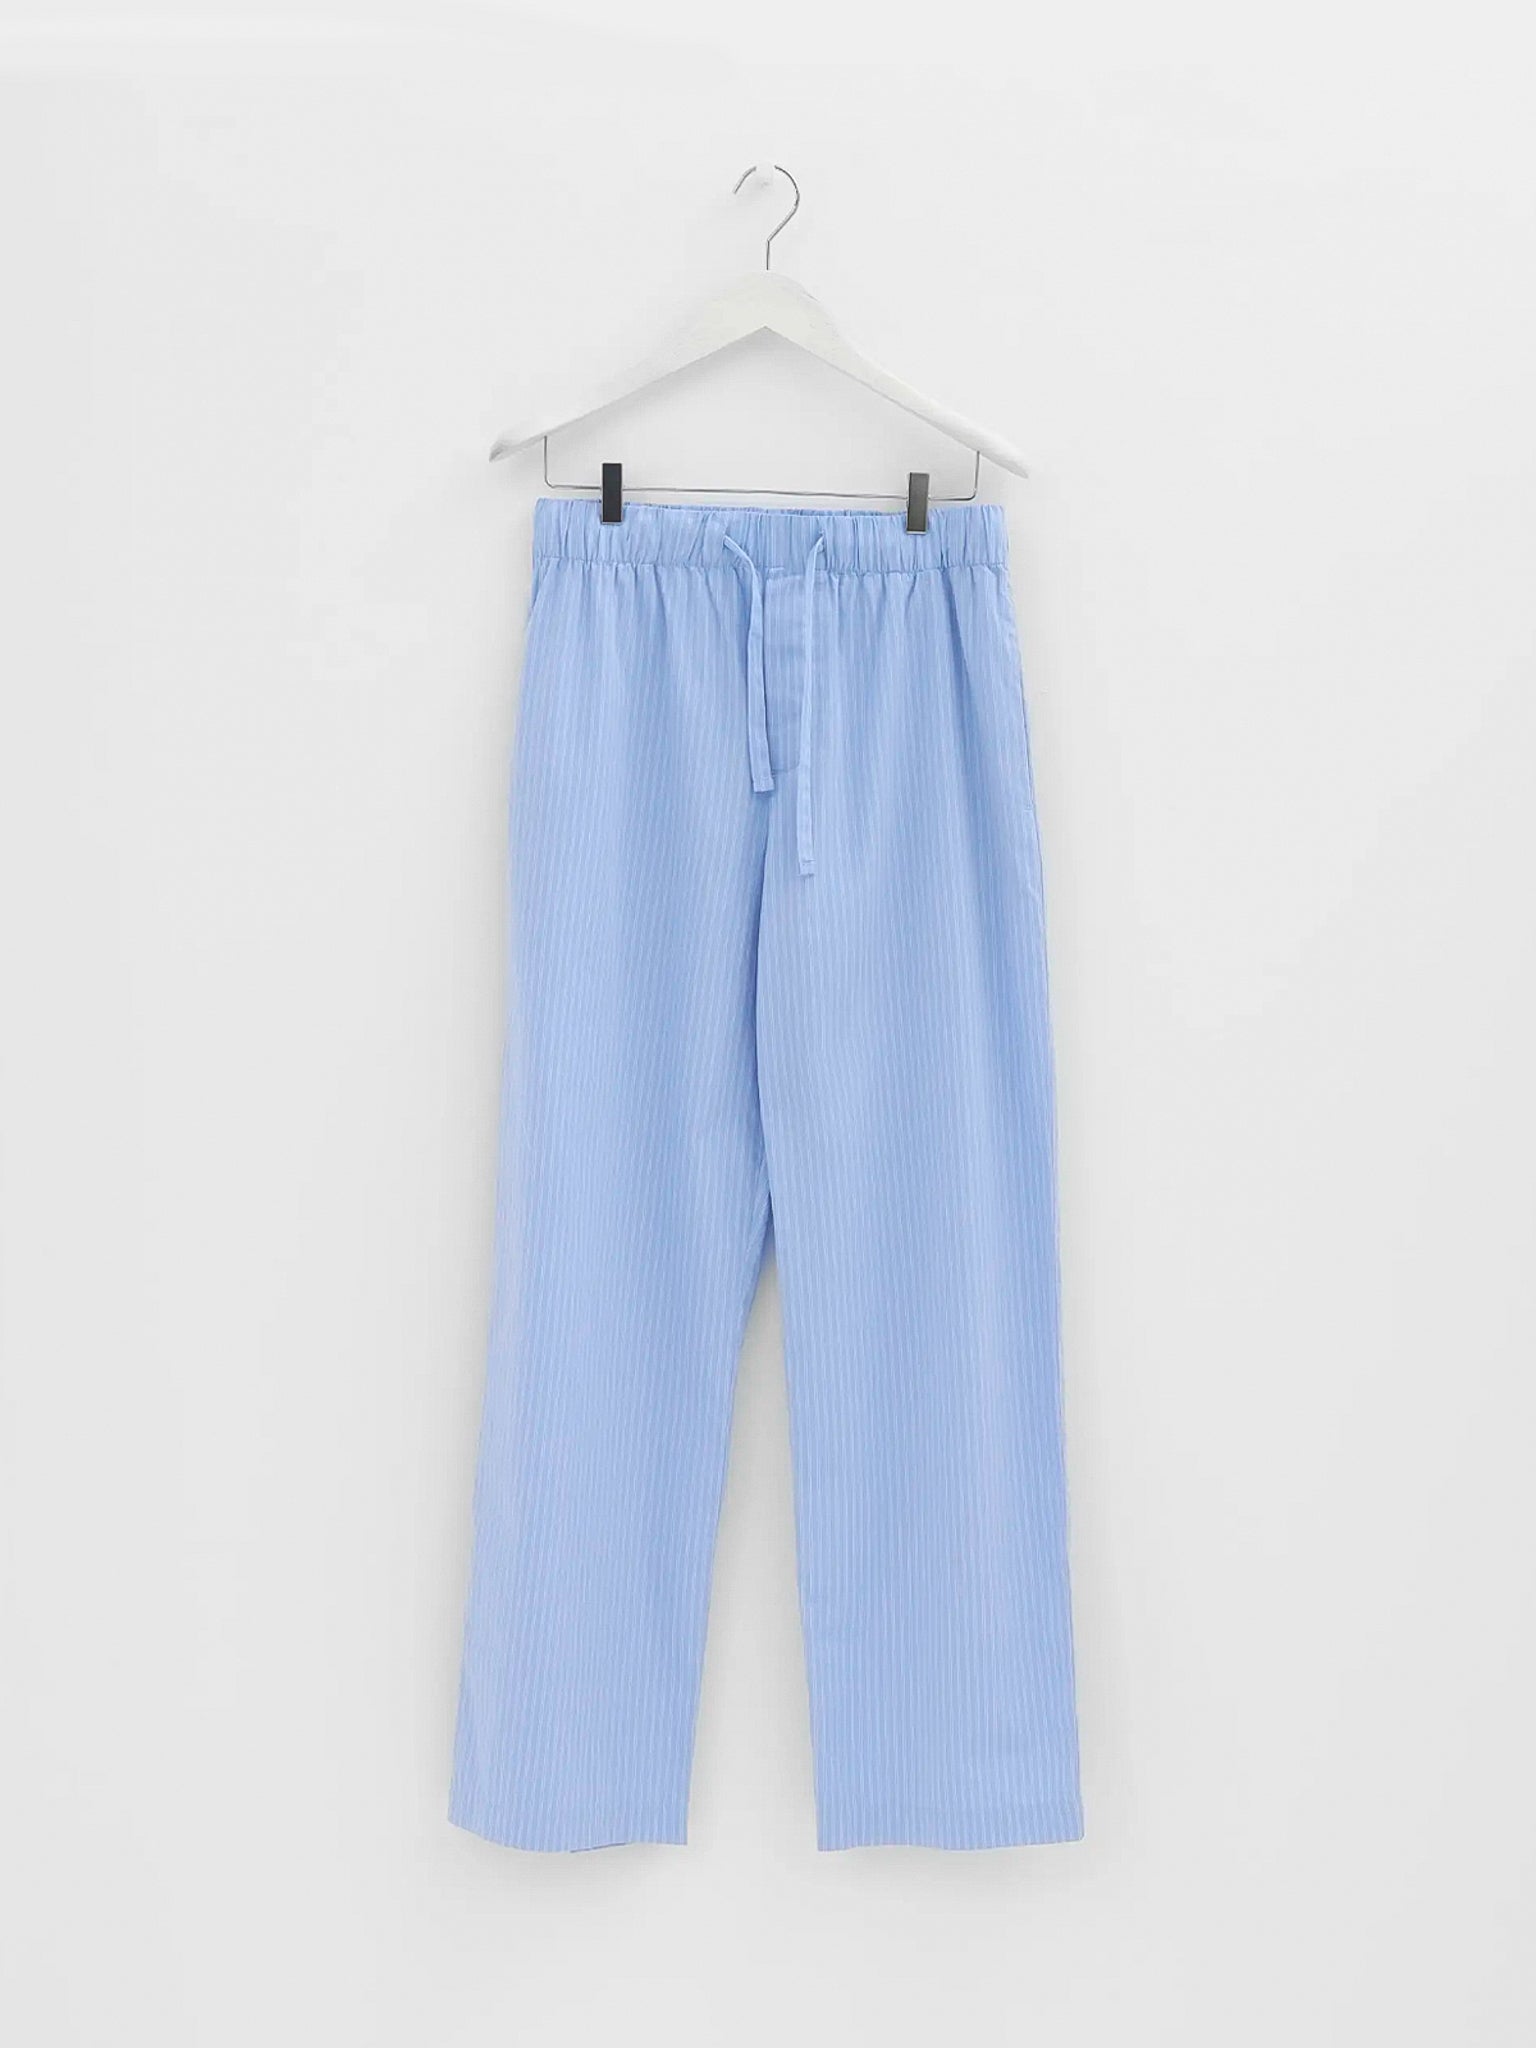 Tekla - Poplin Pyjamas Pants in Pin Stripes